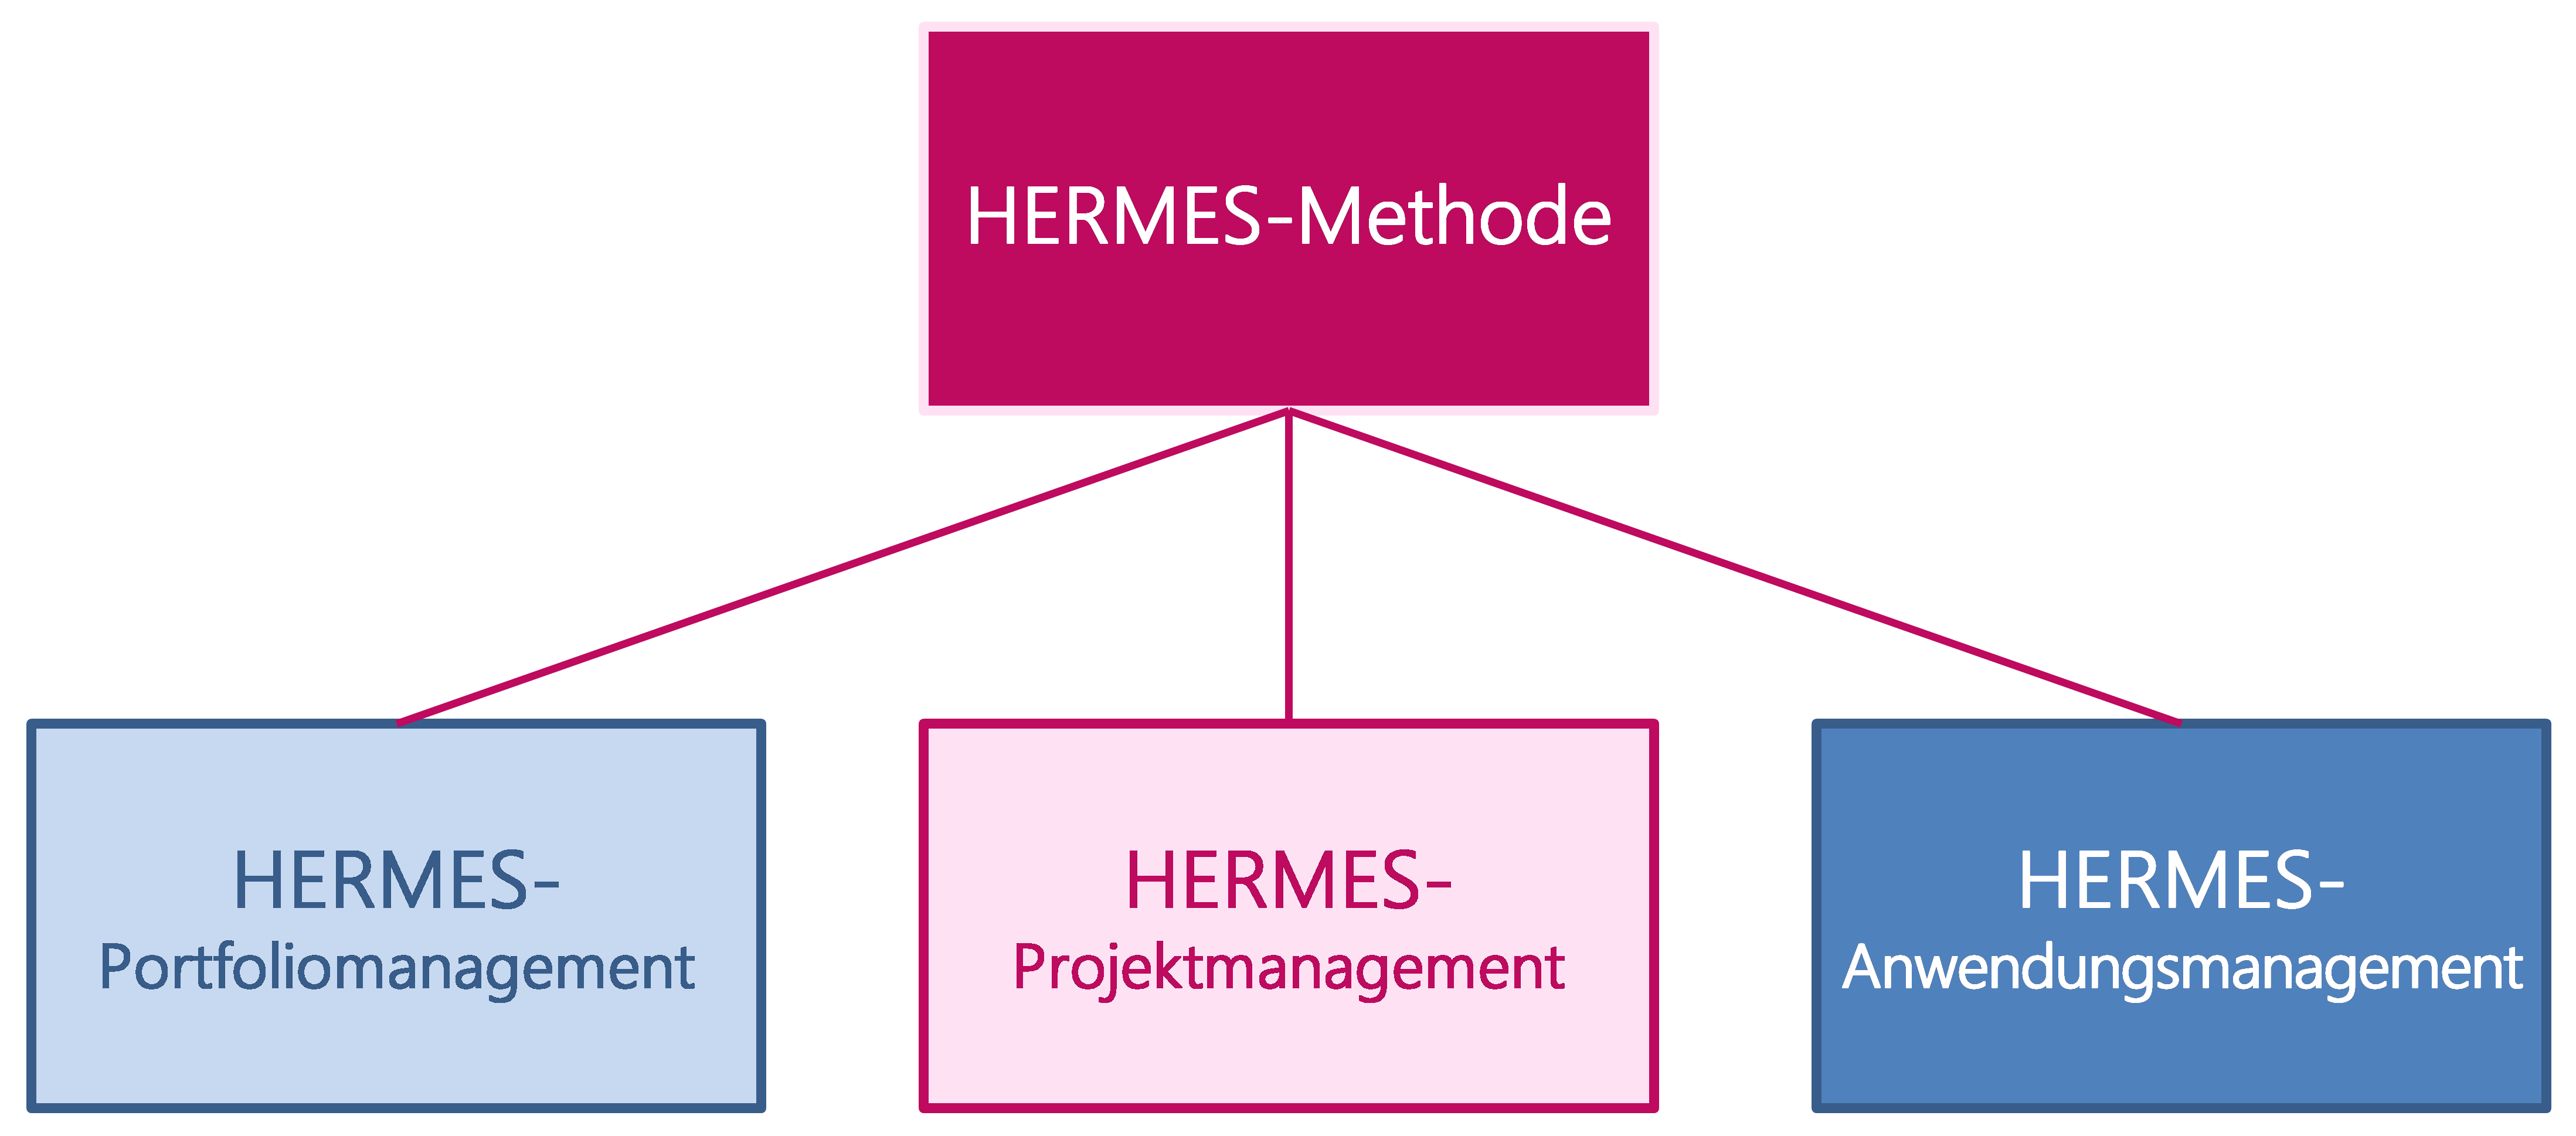 Abbildung 2: Die drei obersten Methodenelemente der HERMES-Methode